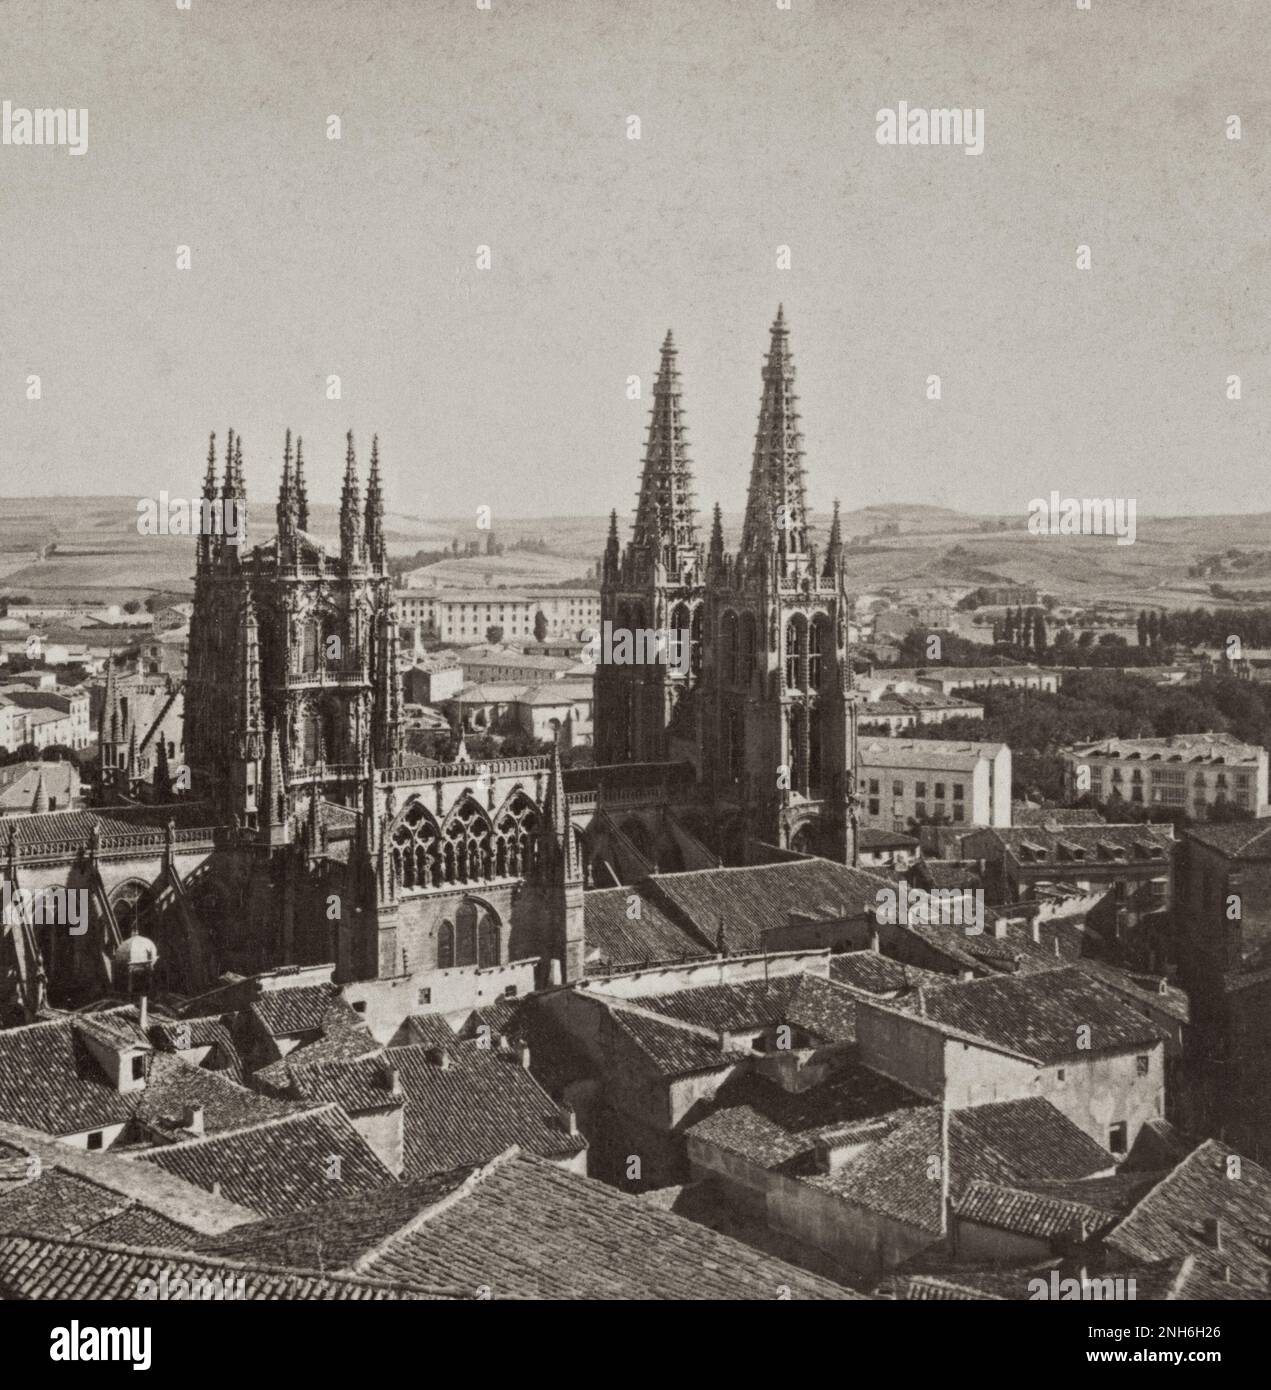 Architecture de la vieille Espagne. Burgos, et la cathédrale (1221 A. D.) l'une des merveilles de l'architecture gothique de l'Espagne. 1902 Banque D'Images